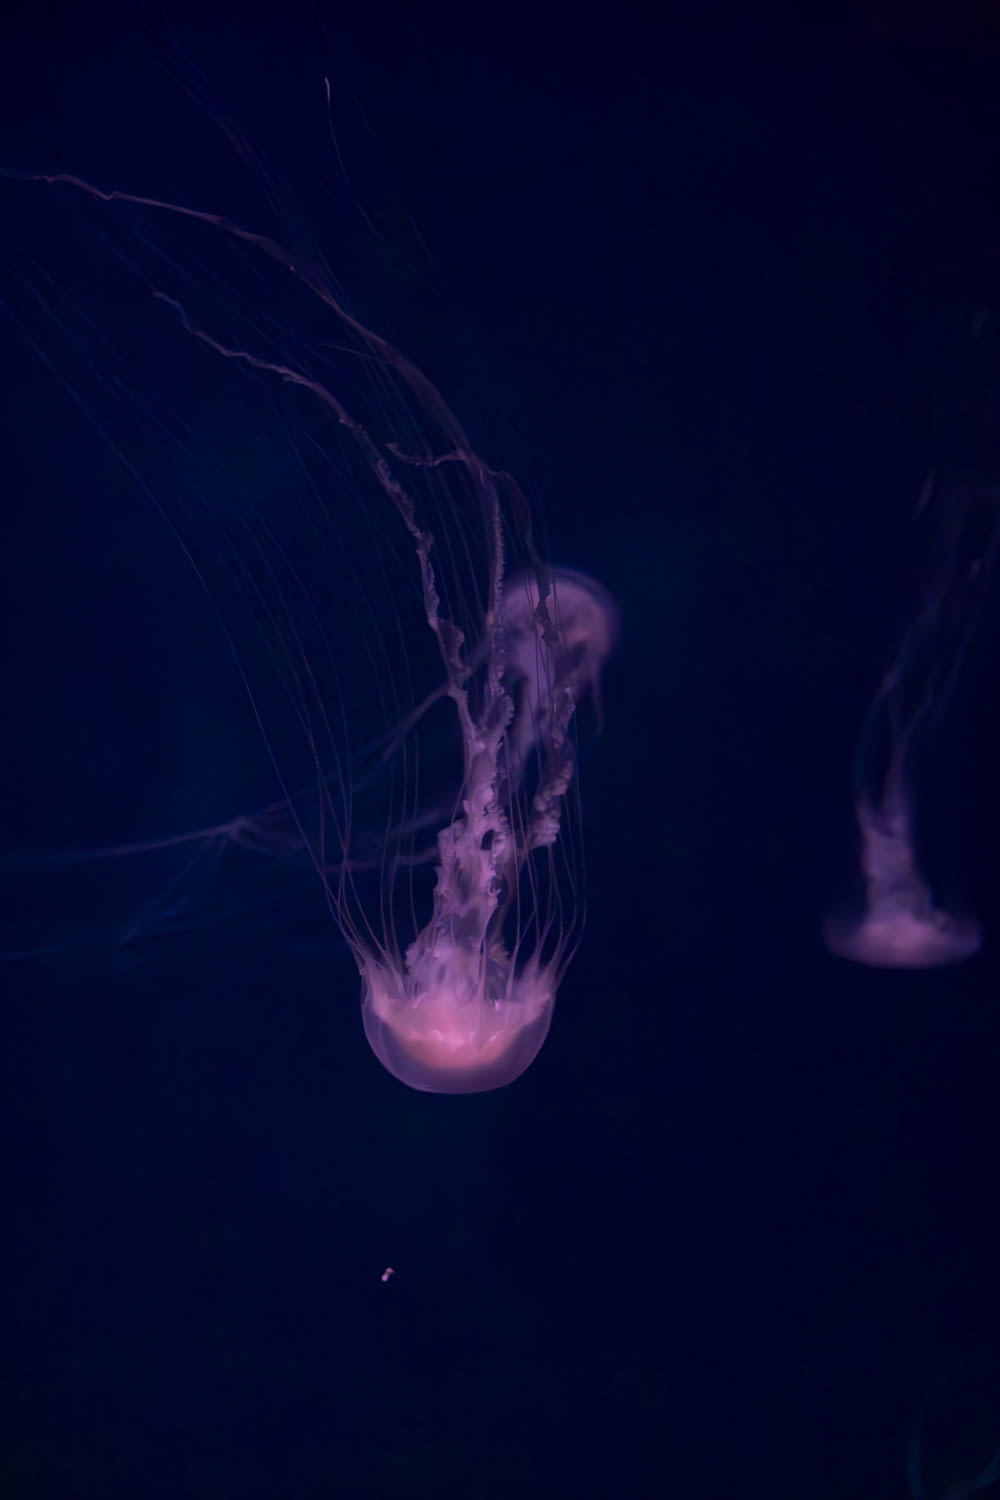 un gruppo di meduse che galleggiano nell'acqua scura